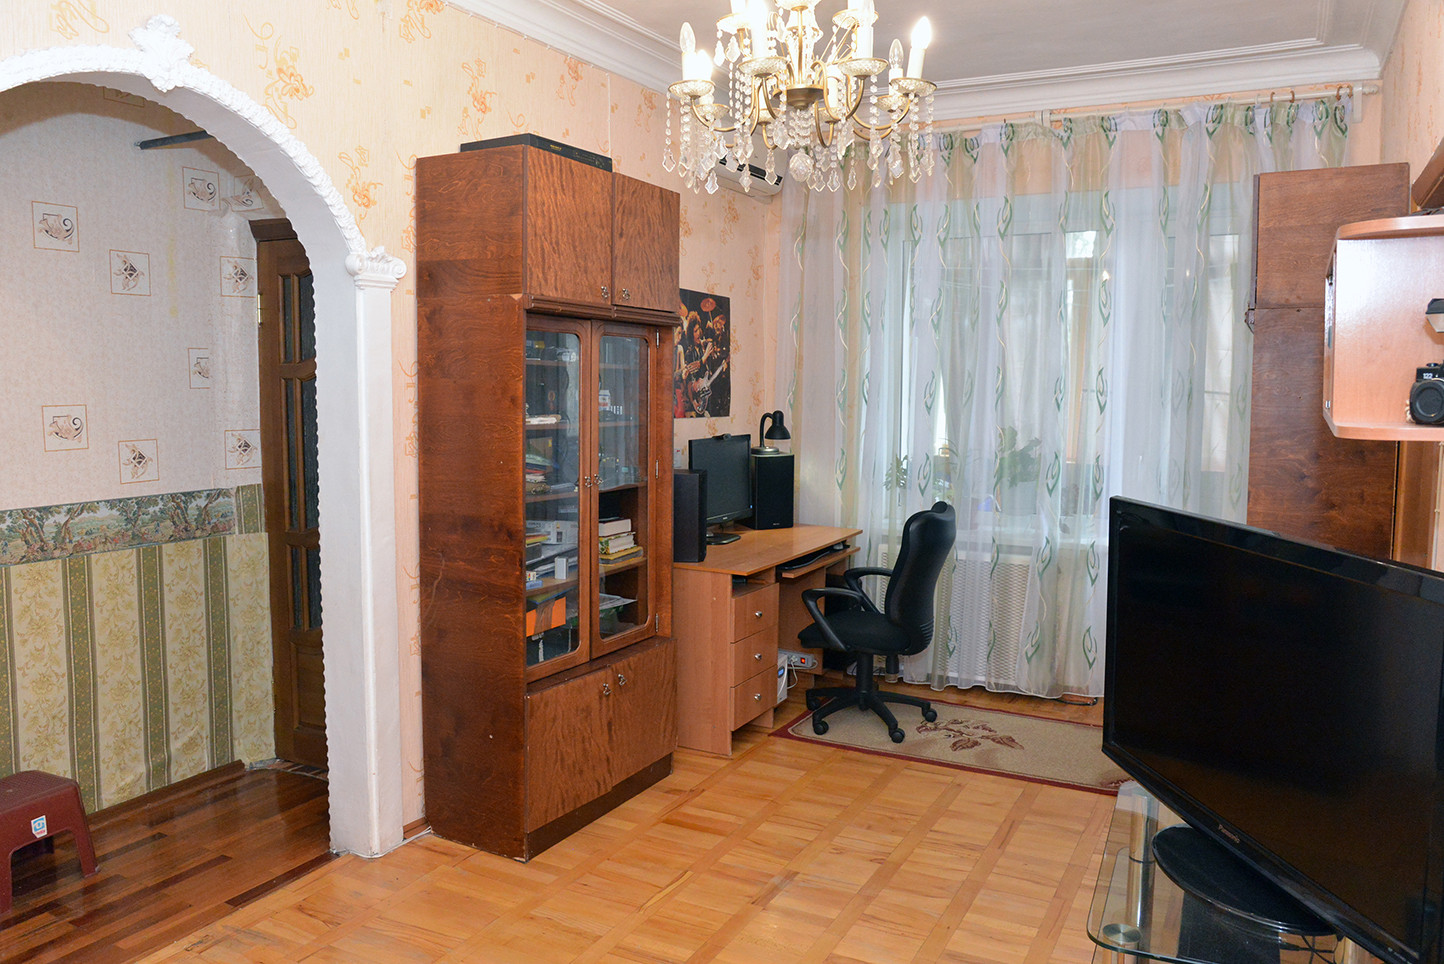 Интернет в квартиру Ставрополь. Ставрополь квартира крона. Купить квартиру в ставрополе свежие объявления